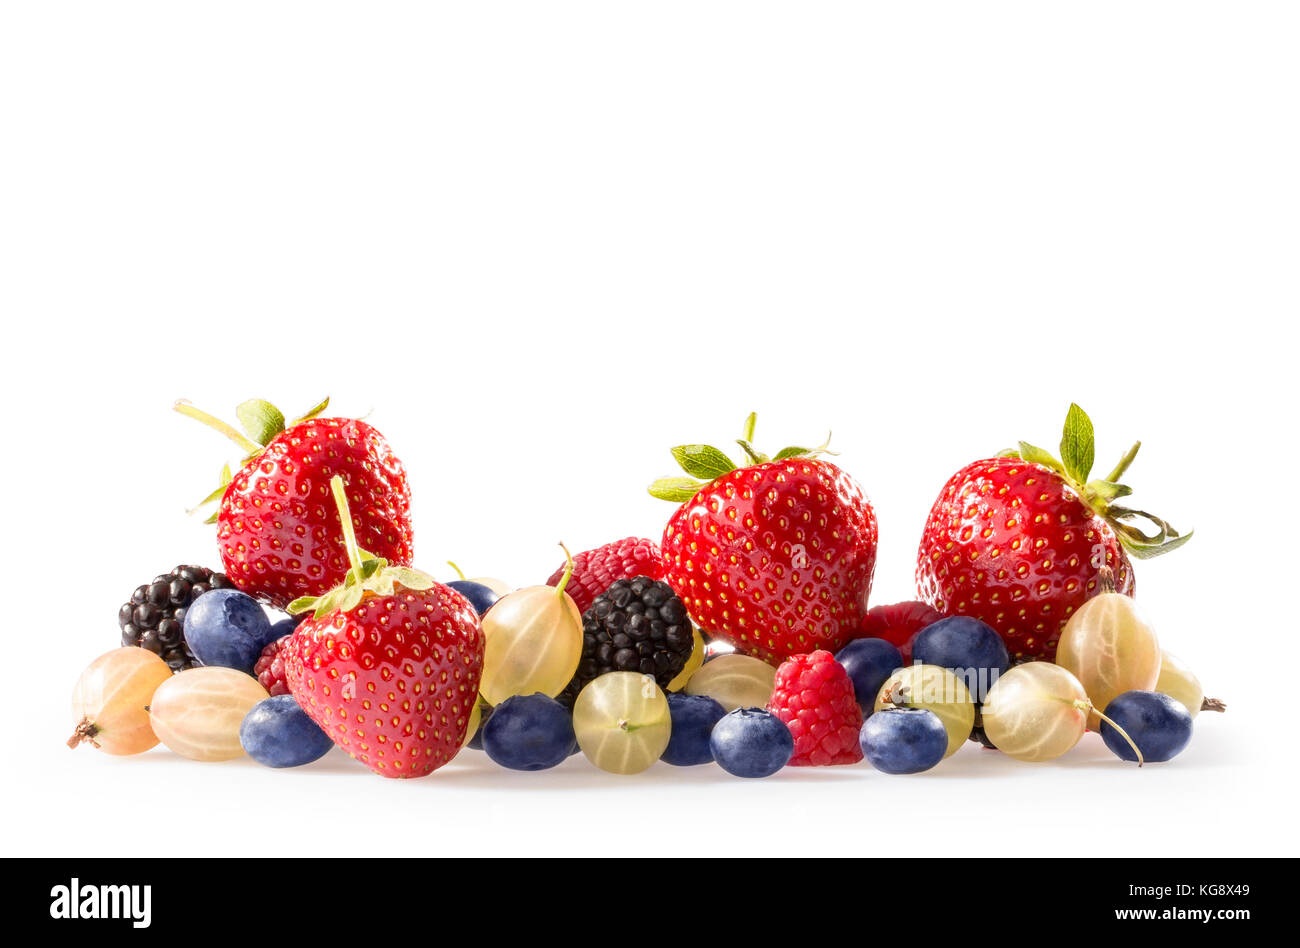 Colección de verano de bayas, fresas, arándanos, grosellas y frambuesas. Foto de stock